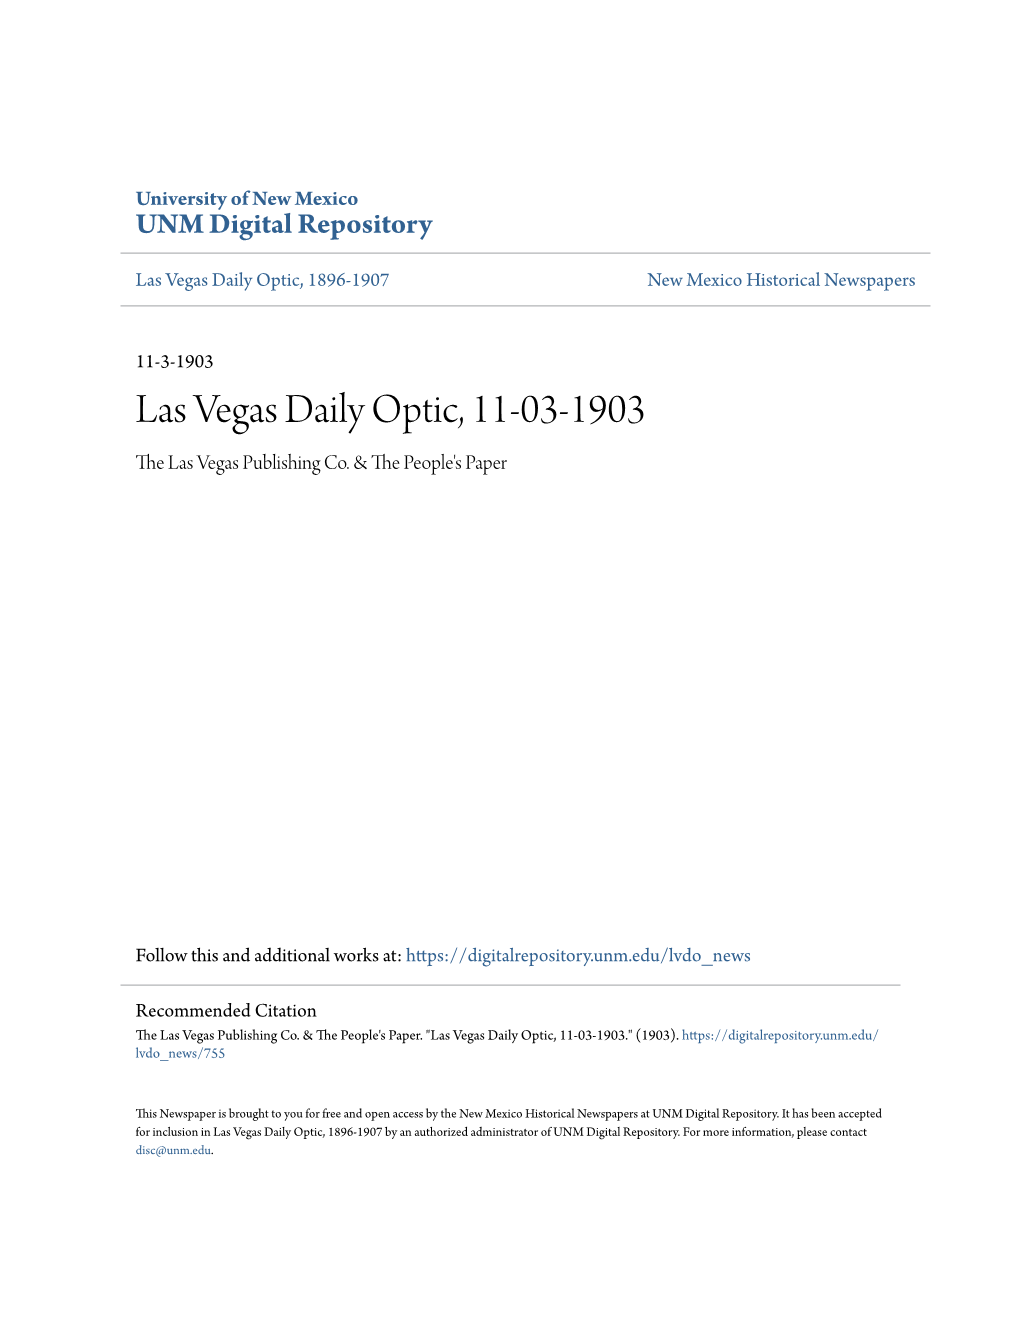 Las Vegas Daily Optic, 11-03-1903 the Las Vegas Publishing Co